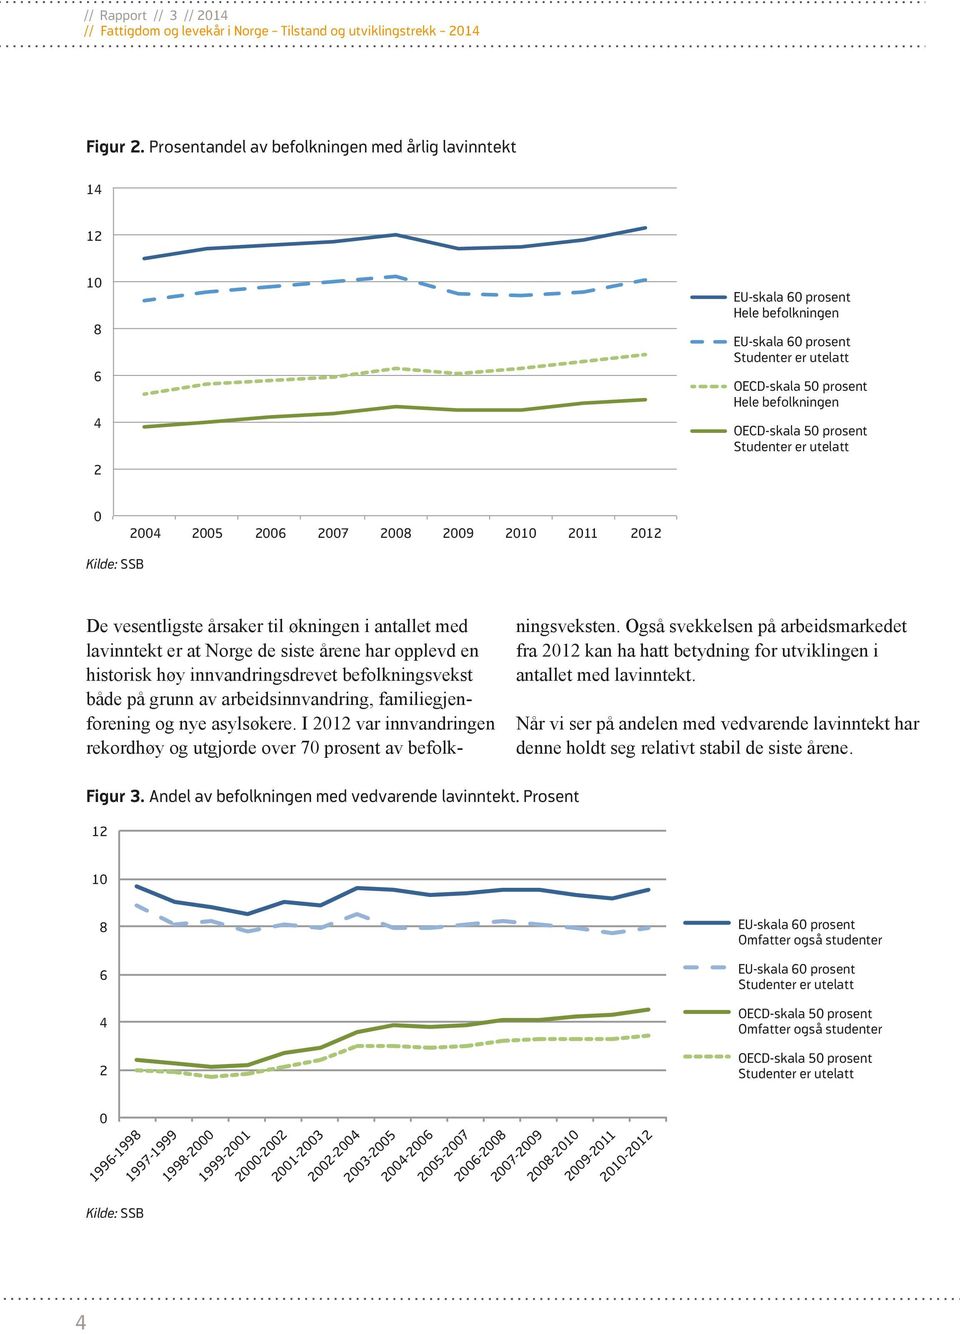 prosent Studenter er utelatt 0 2004 2005 2006 2007 2008 2009 2010 2011 2012 Kilde: SSB De vesentligste årsaker til økningen i antallet med lavinntekt er at Norge de siste årene har opplevd en